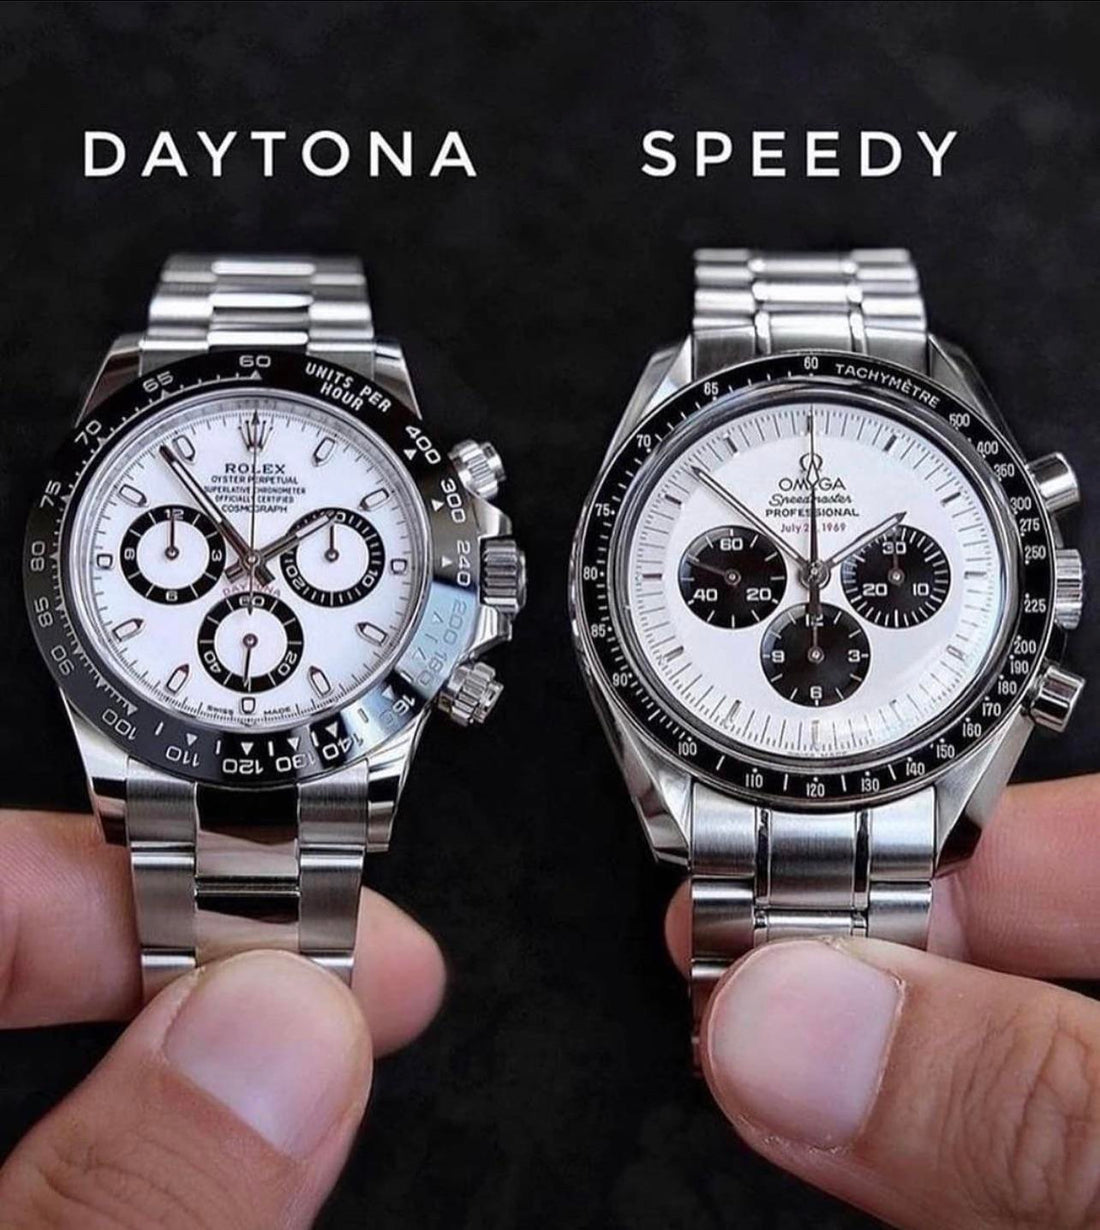 Speedy vs Daytona!